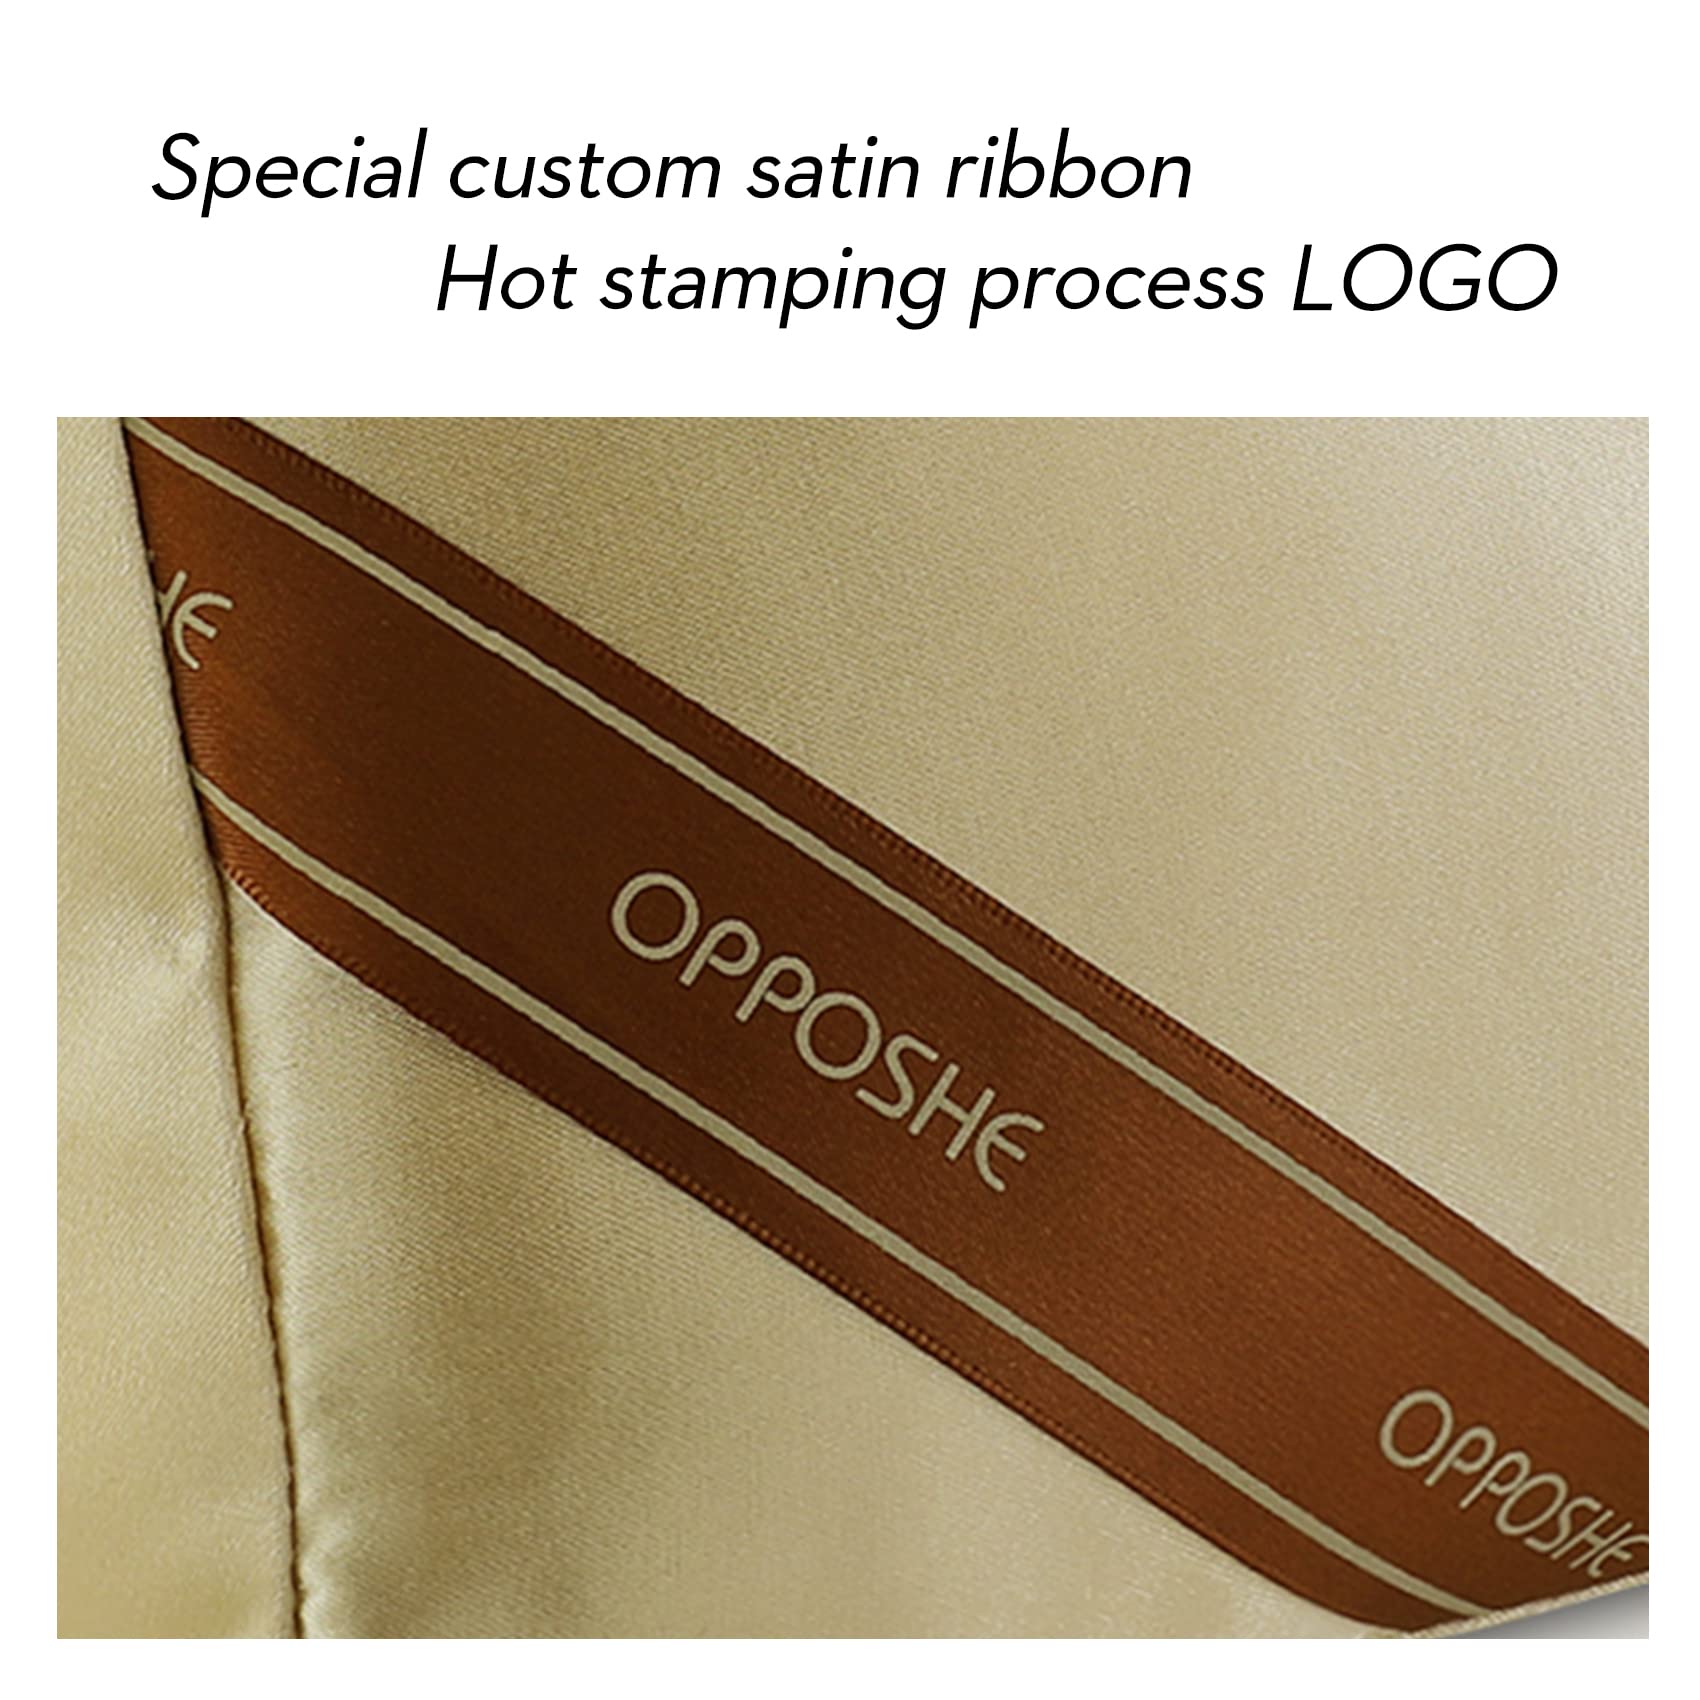 Satin Pillow Luxury Bag Shaper For Louis Vuitton's Noe, Petite Noe